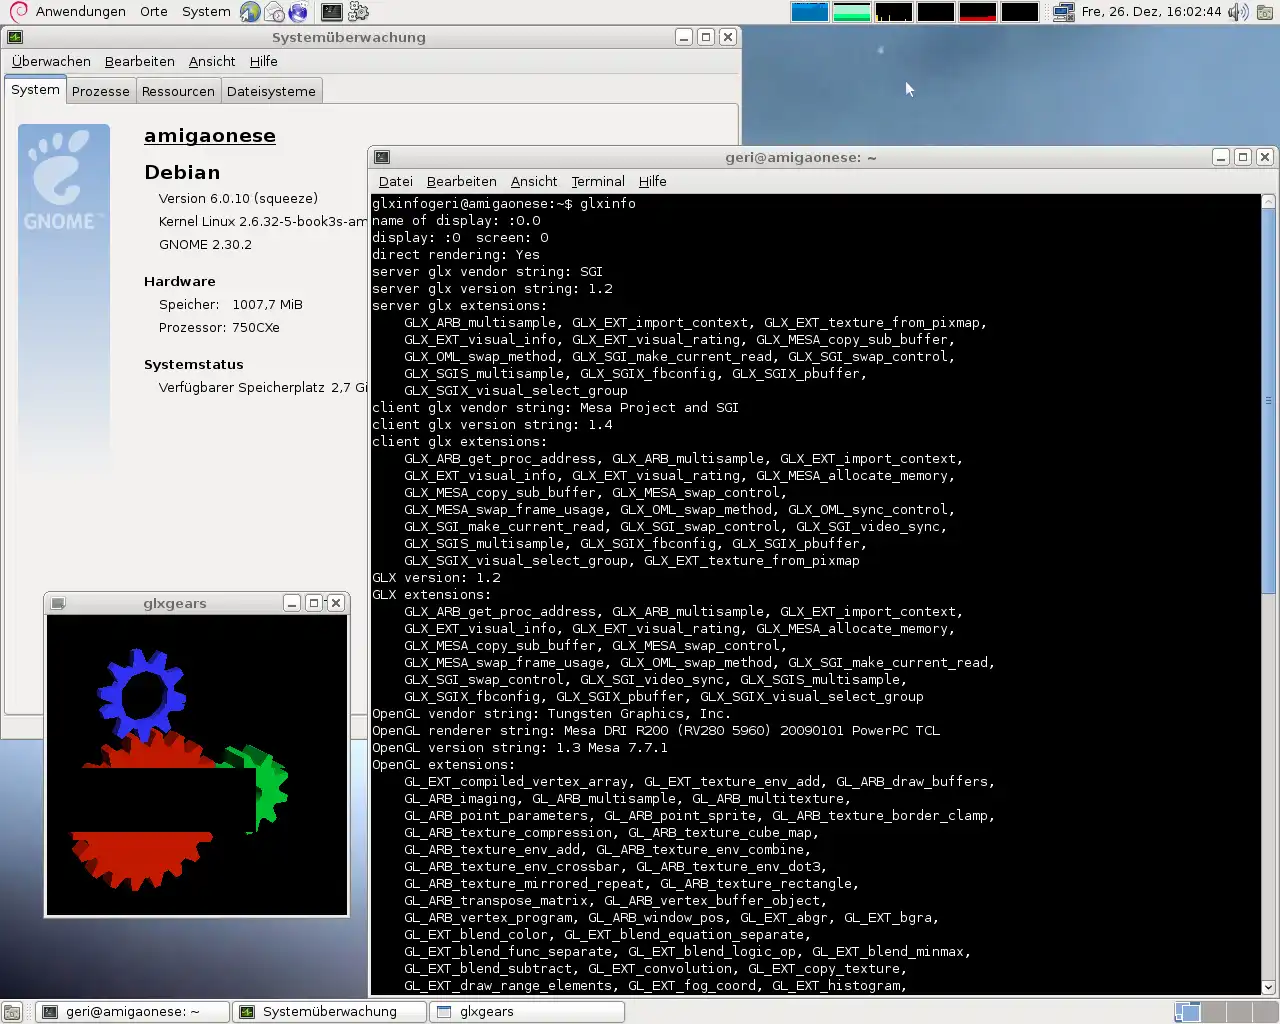 വെബ് ടൂൾ അല്ലെങ്കിൽ വെബ് ആപ്പ് ഡൗൺലോഡ് ചെയ്യുക AmigaOne/Teron CX/PX Linux പിന്തുണ